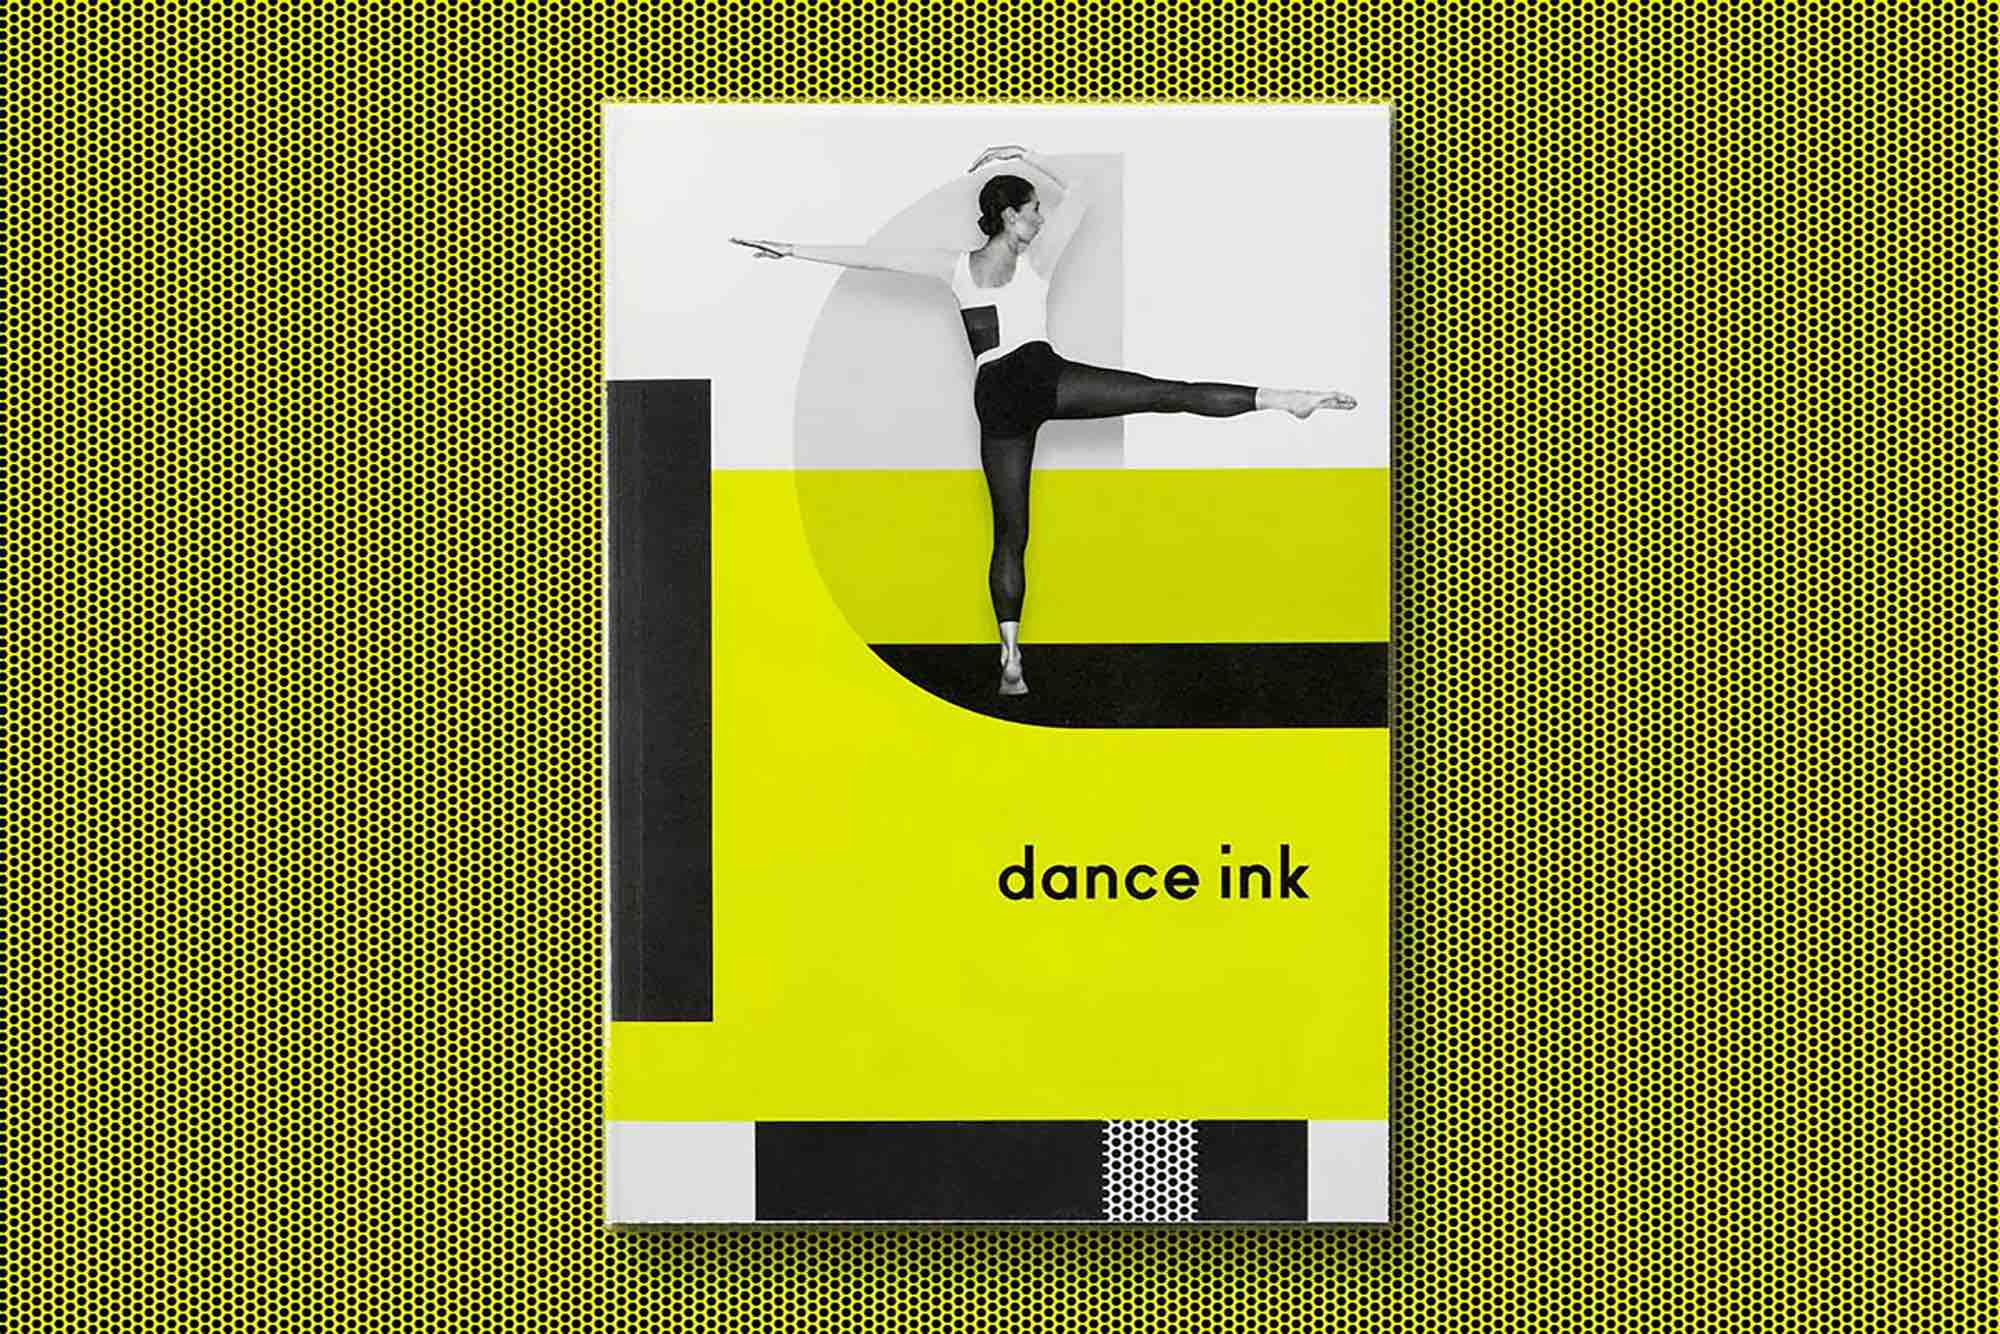 Dance Ink 01